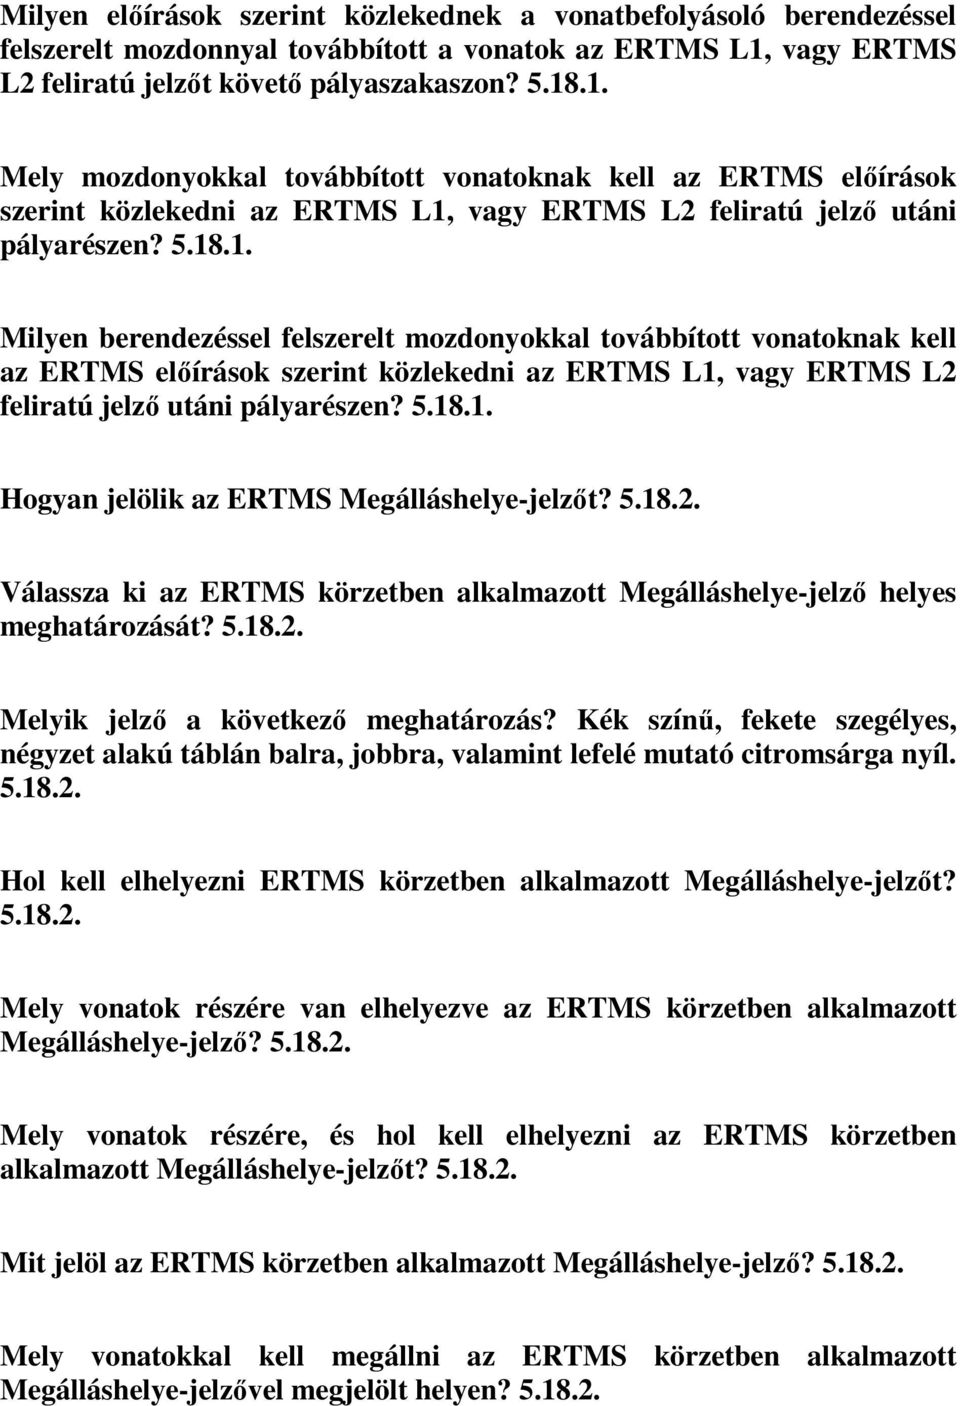 .1. Mely mozdonyokkal továbbított vonatoknak kell az ERTMS előírások szerint közlekedni az ERTMS L1, vagy ERTMS L2 feliratú jelző utáni pályarészen? 5.18.1. Milyen berendezéssel felszerelt mozdonyokkal továbbított vonatoknak kell az ERTMS előírások szerint közlekedni az ERTMS L1, vagy ERTMS L2 feliratú jelző utáni pályarészen?